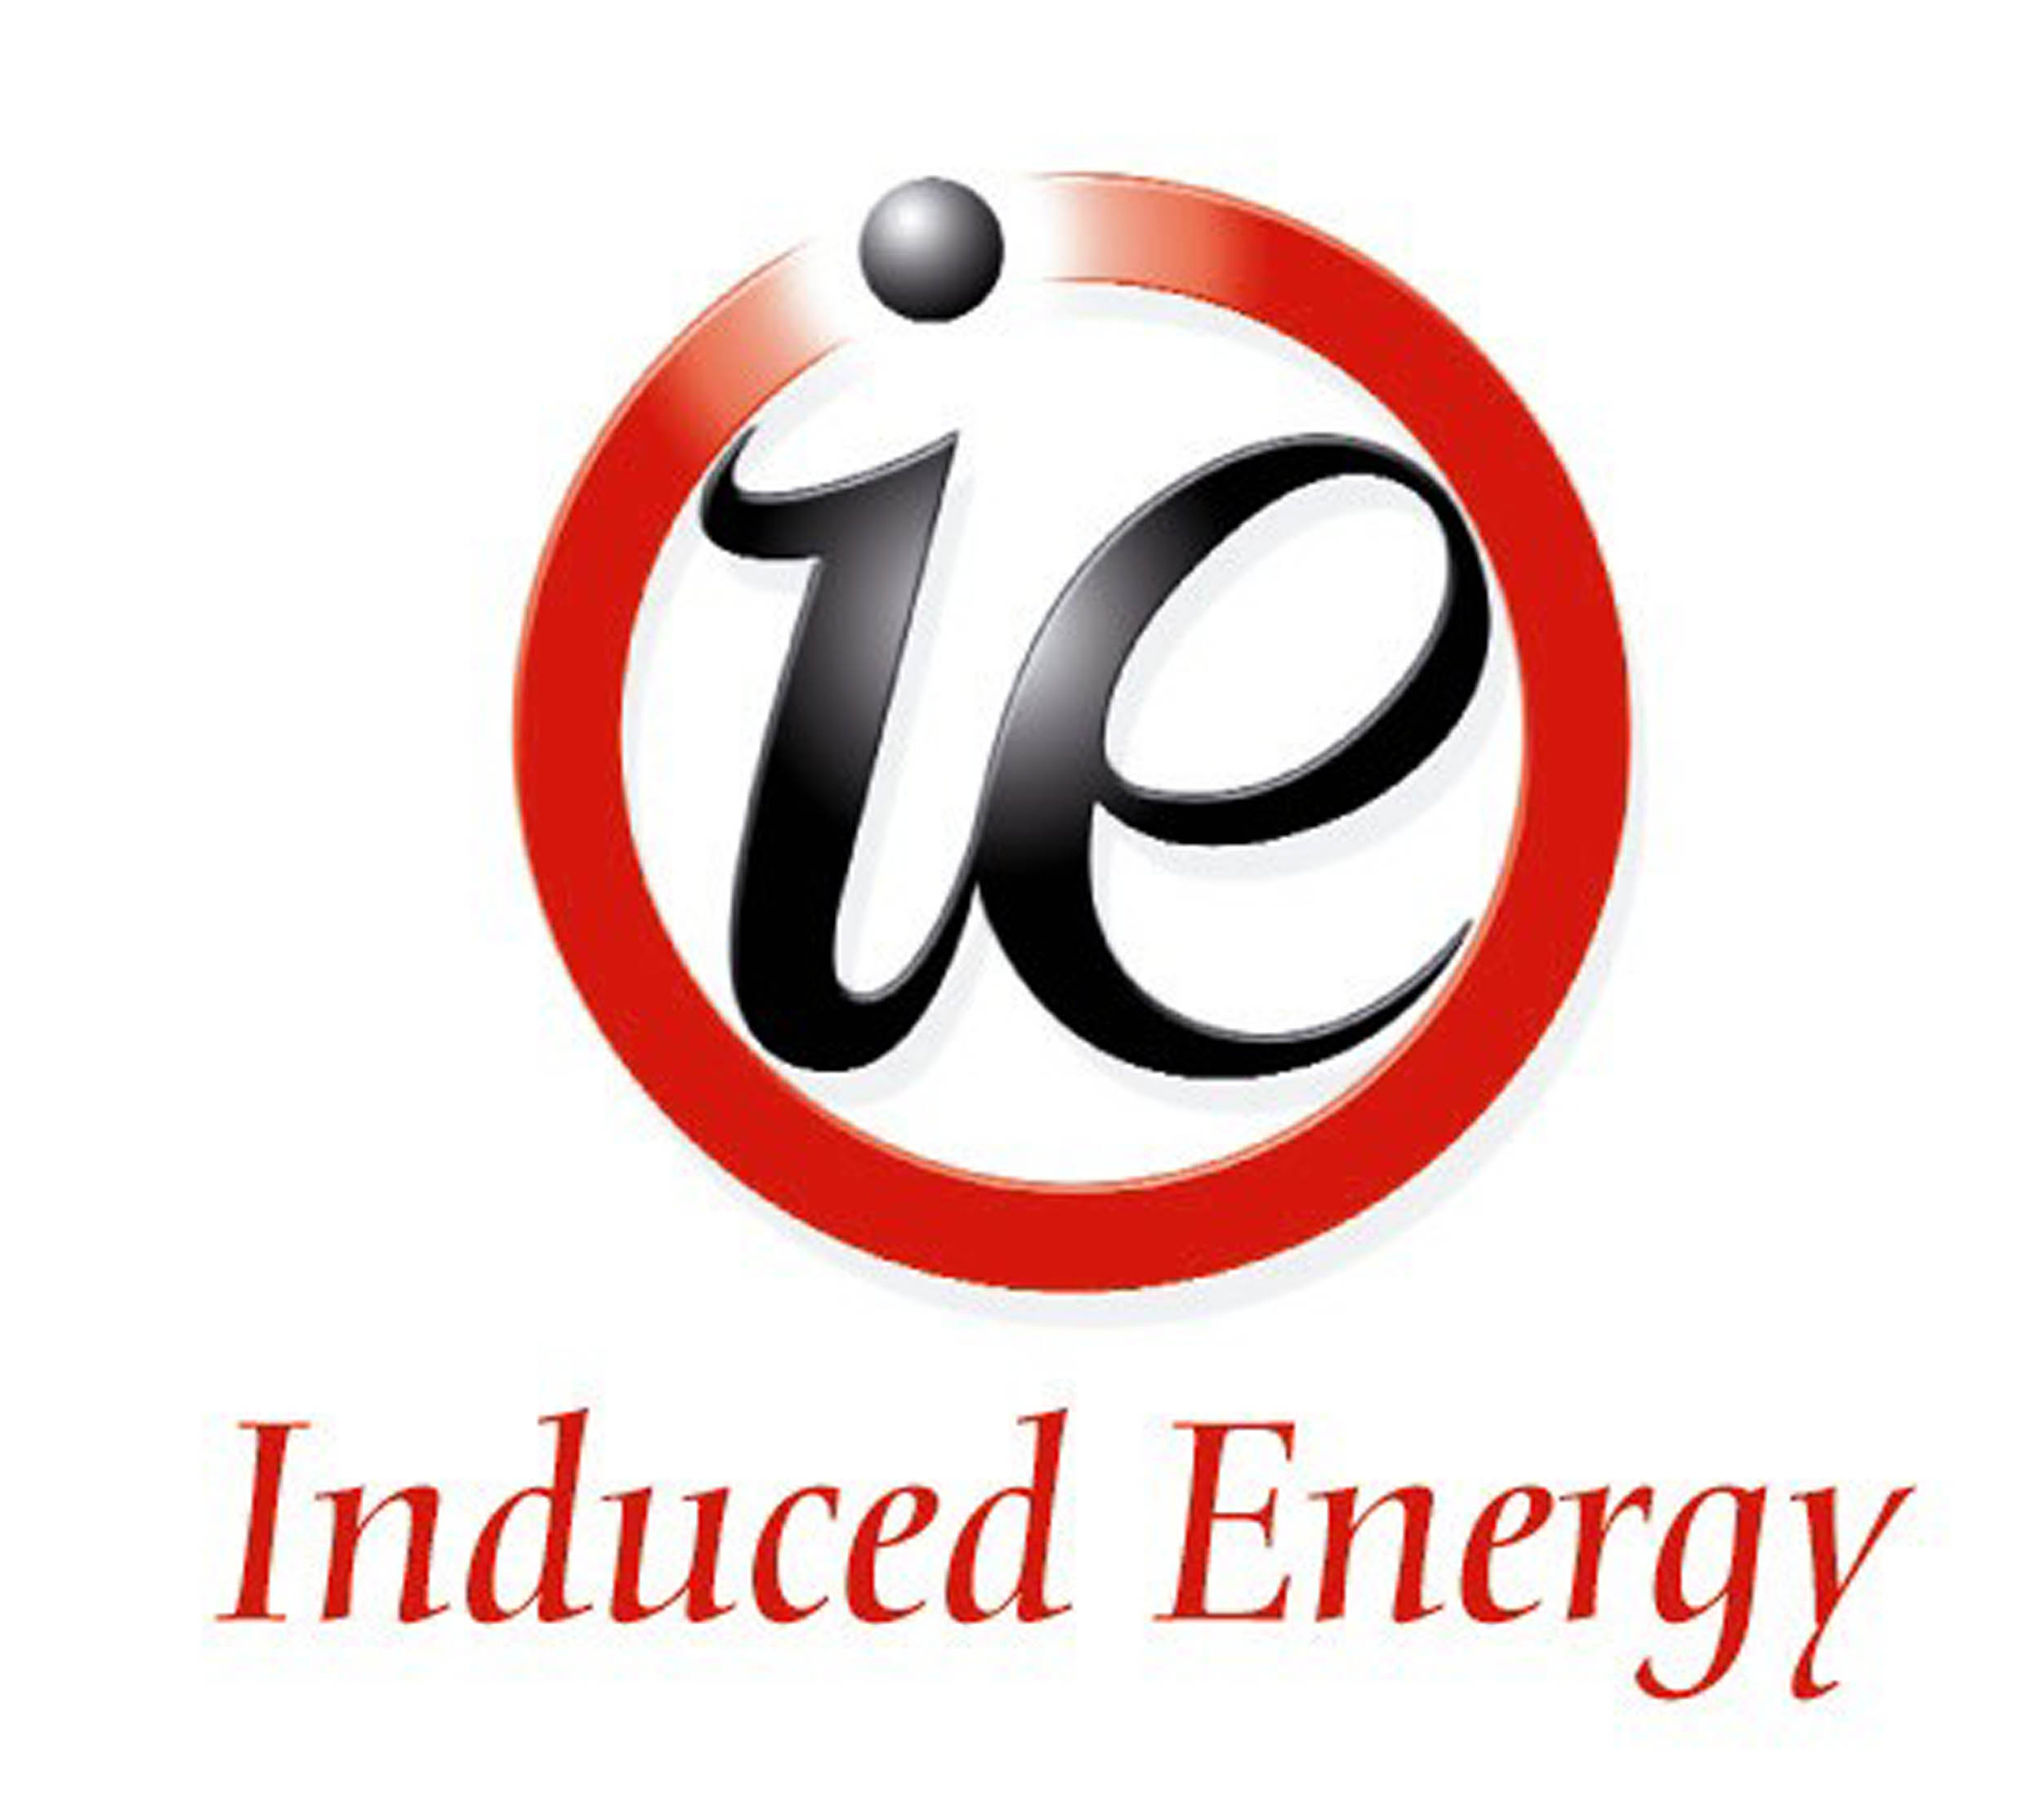 Induced Energy Ltd